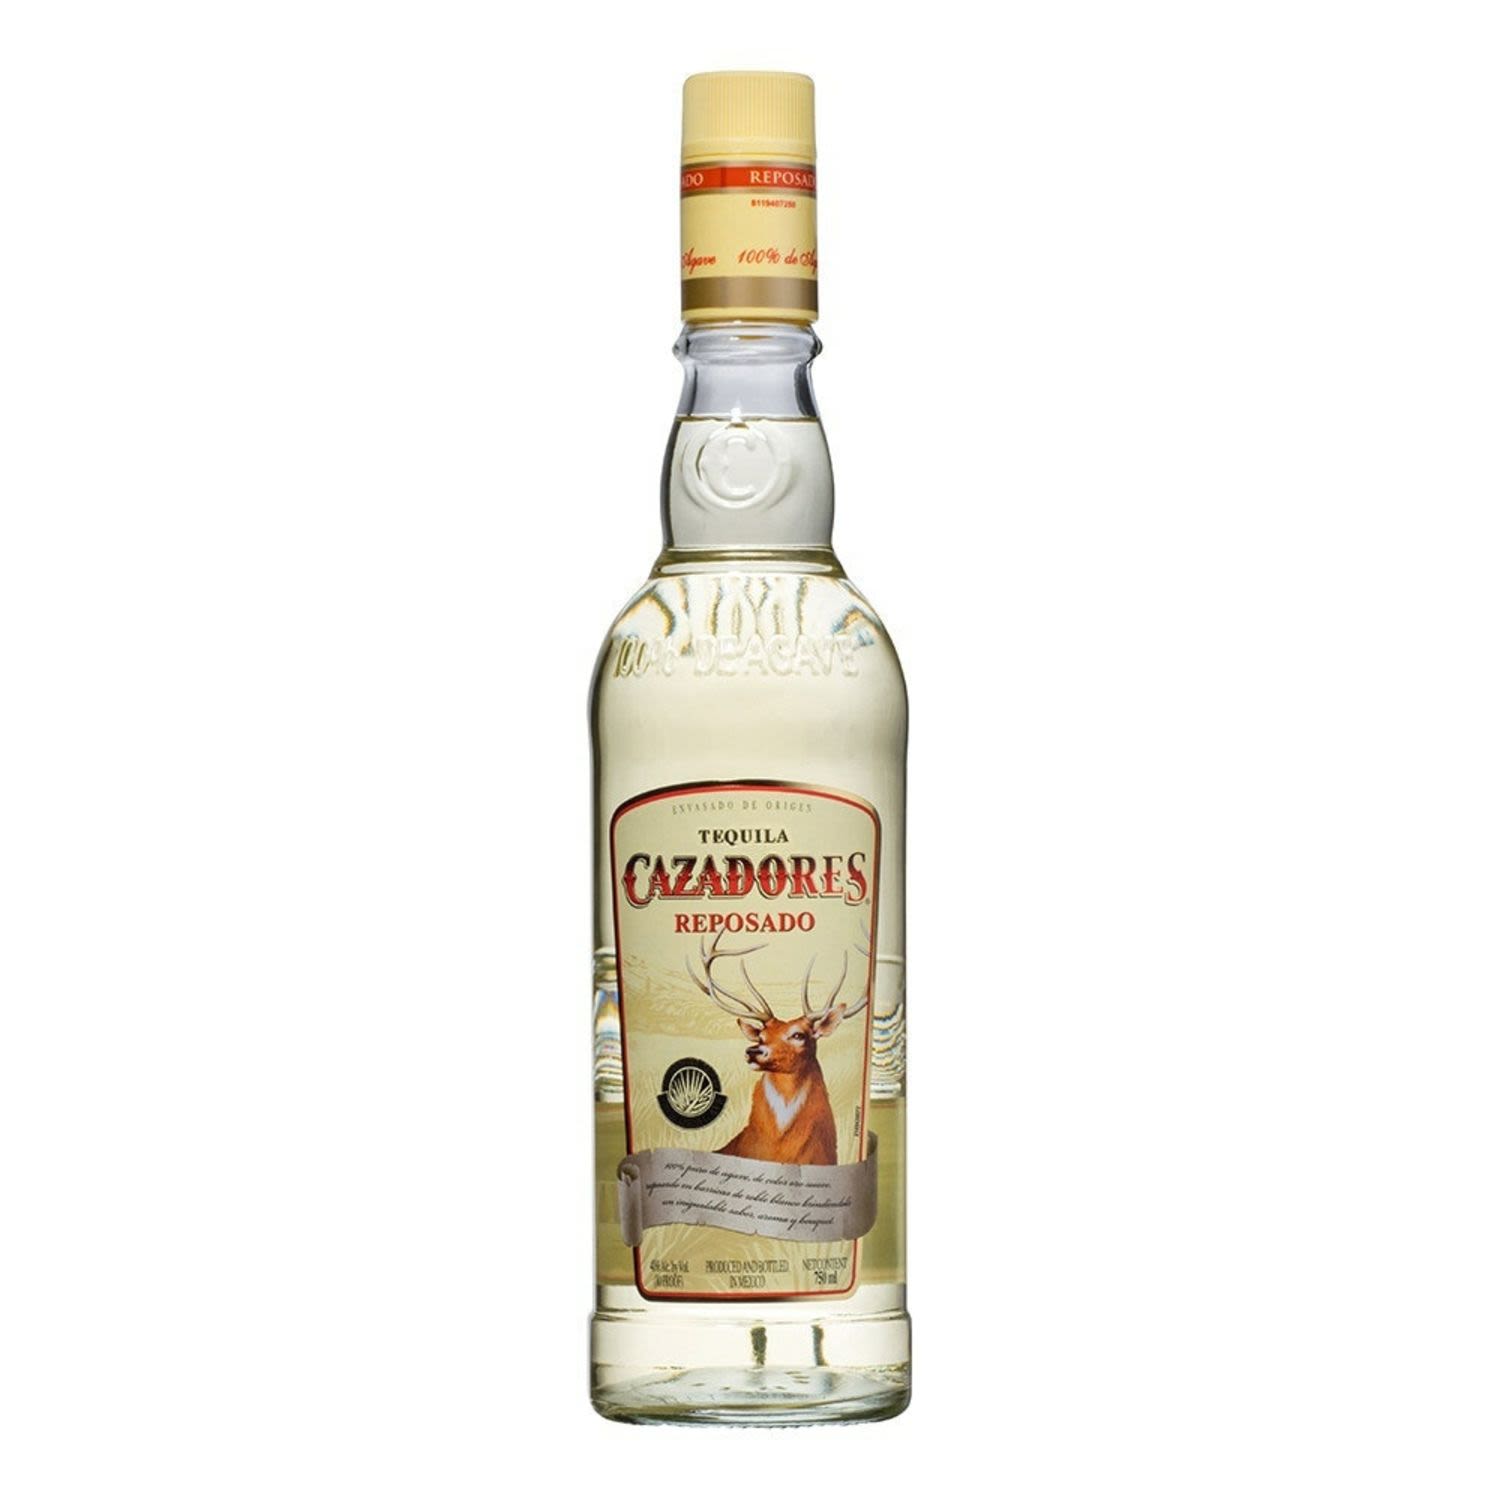 Cazadores Reposado Tequila 750mL<br /> <br />Alcohol Volume: 40.00%<br /><br />Pack Format: Bottle<br /><br />Standard Drinks: 23.7</br /><br />Pack Type: Bottle<br />